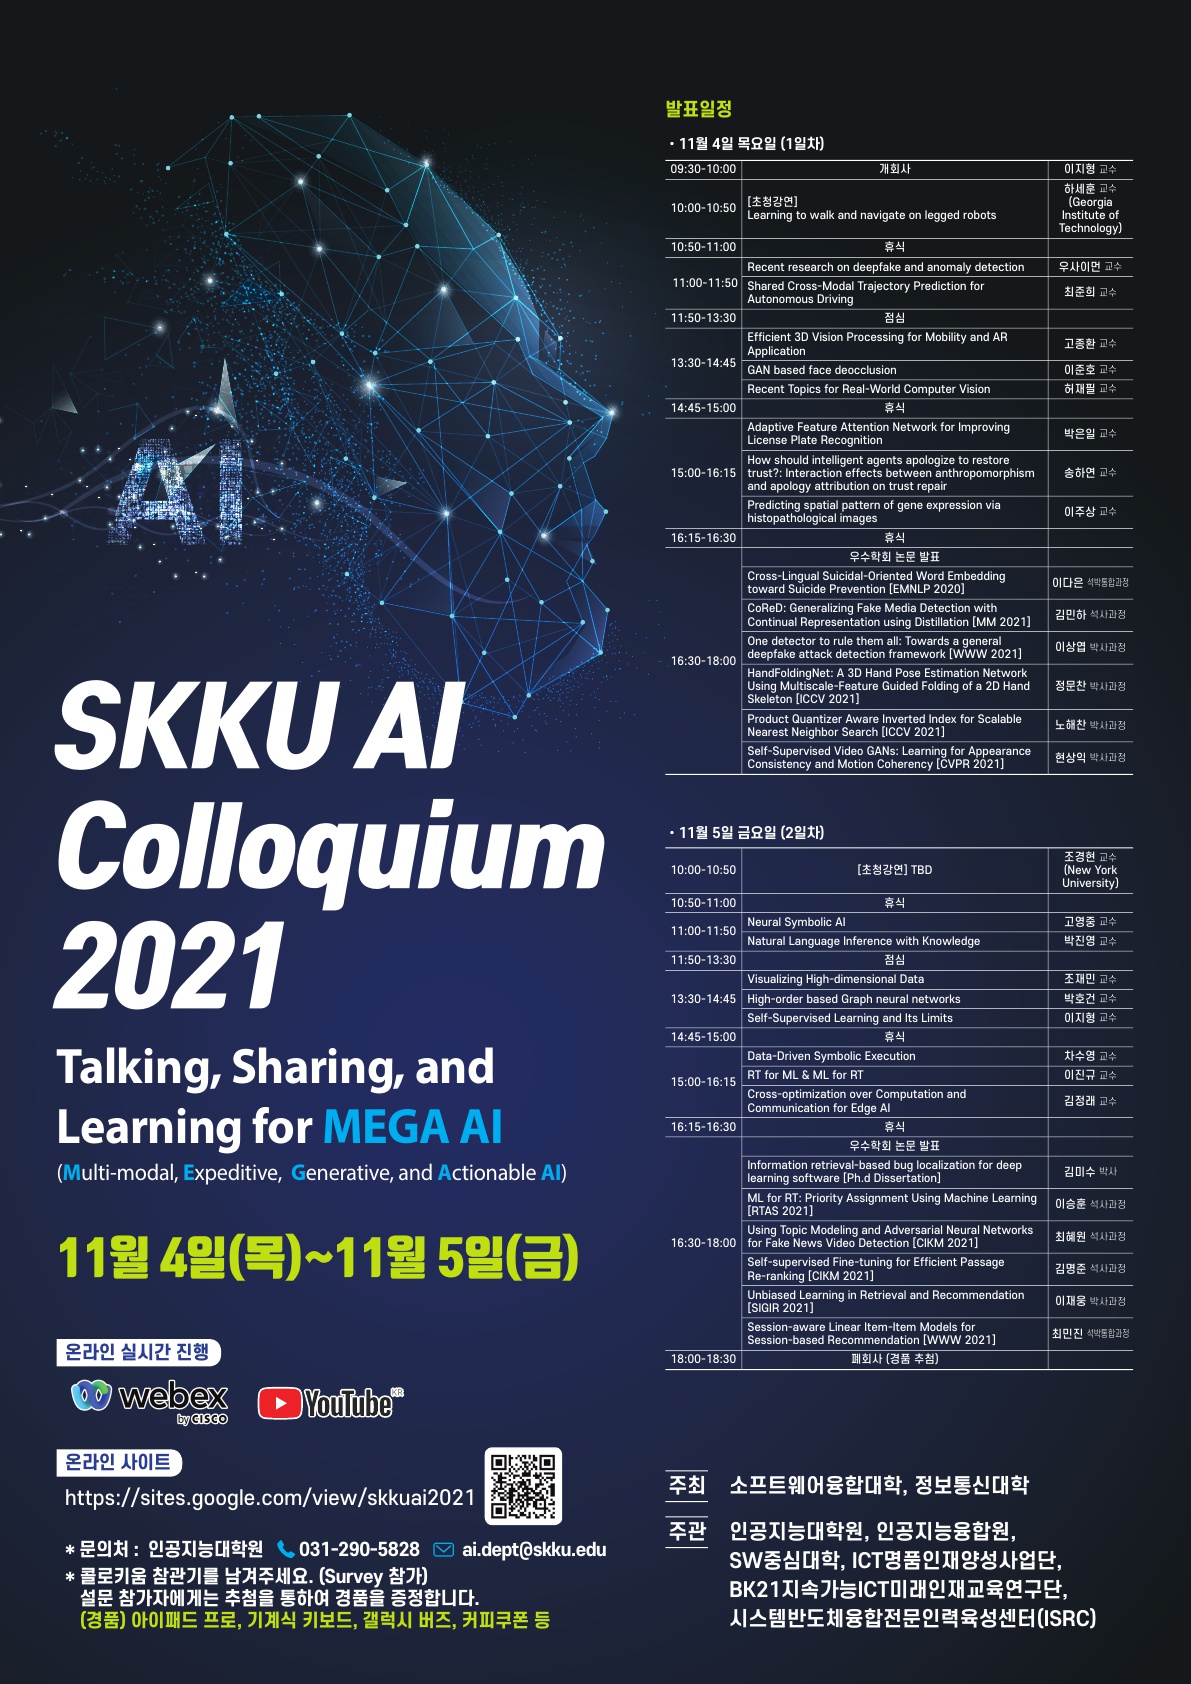 SKKU AI Colloquium 2021